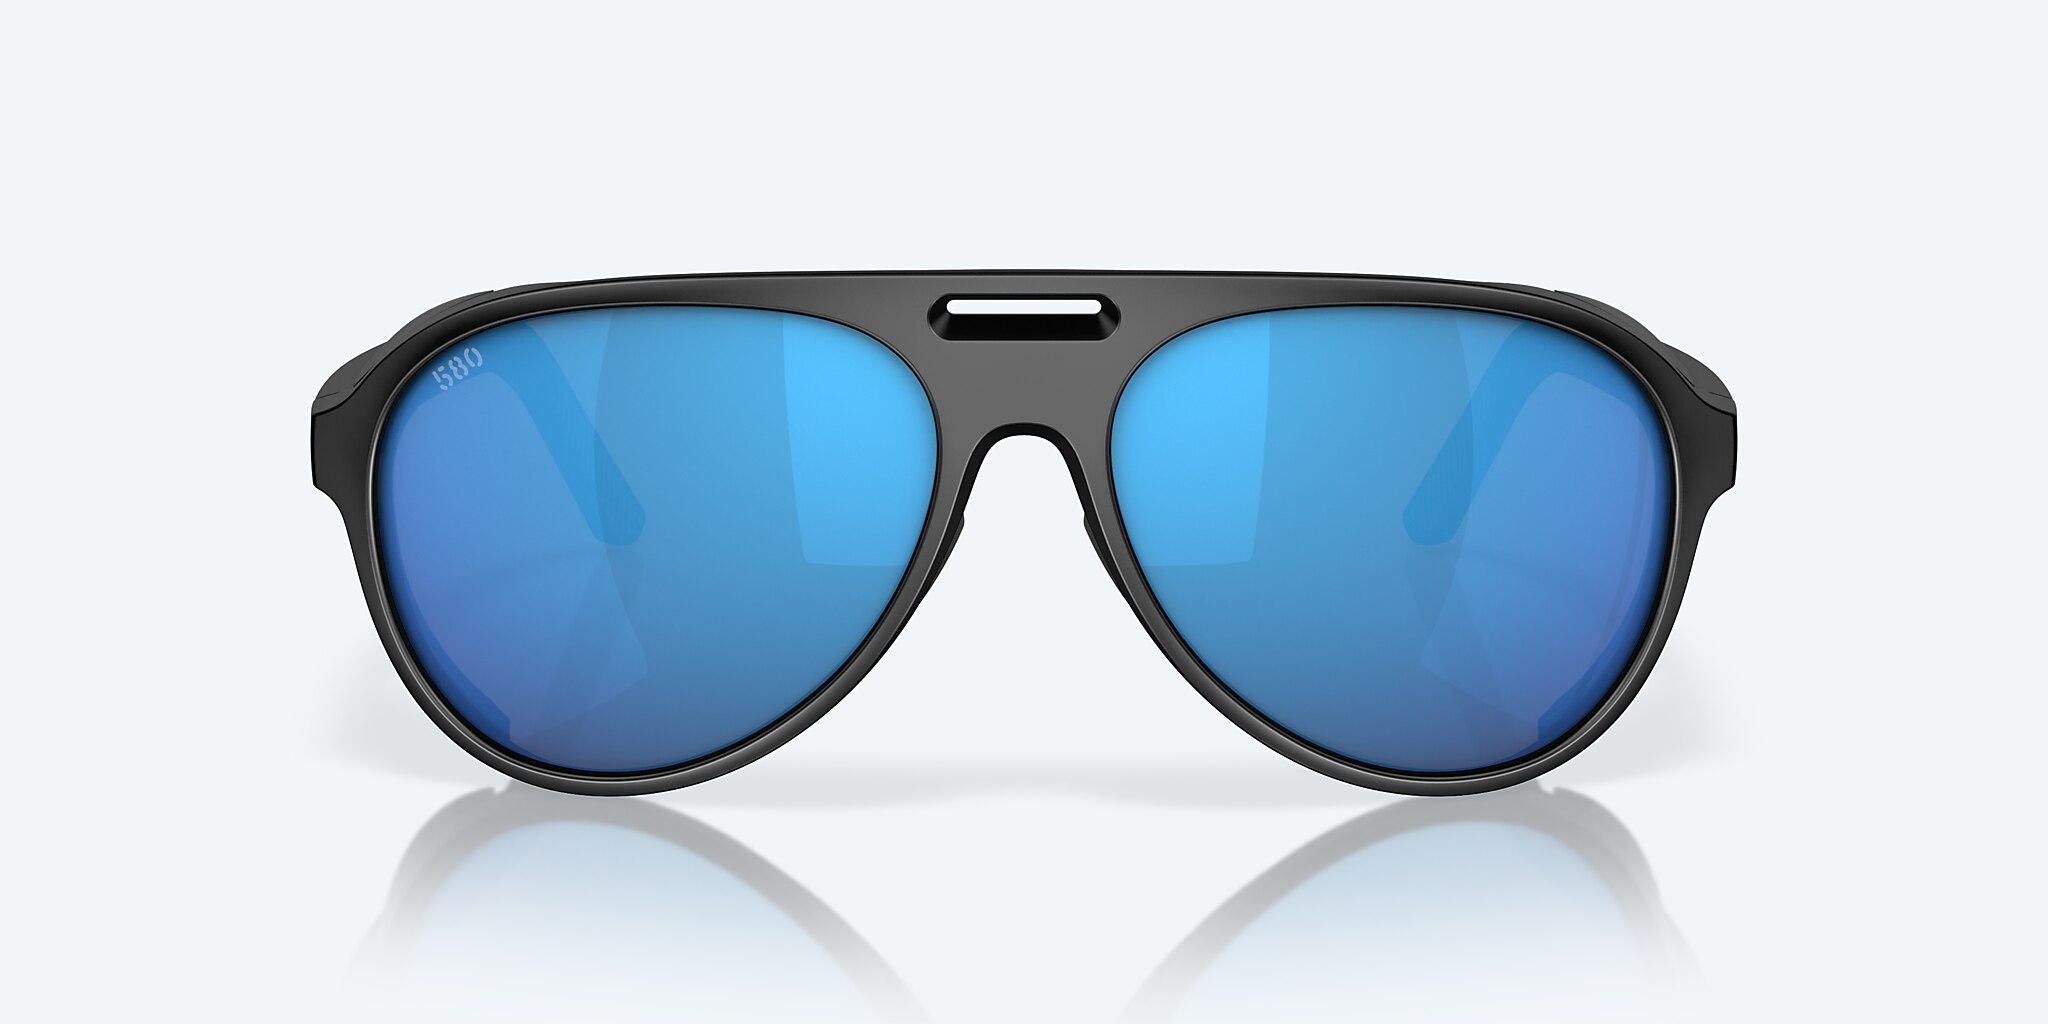 Costa del Mar Grand Catalina - Sunglasses: Reviews